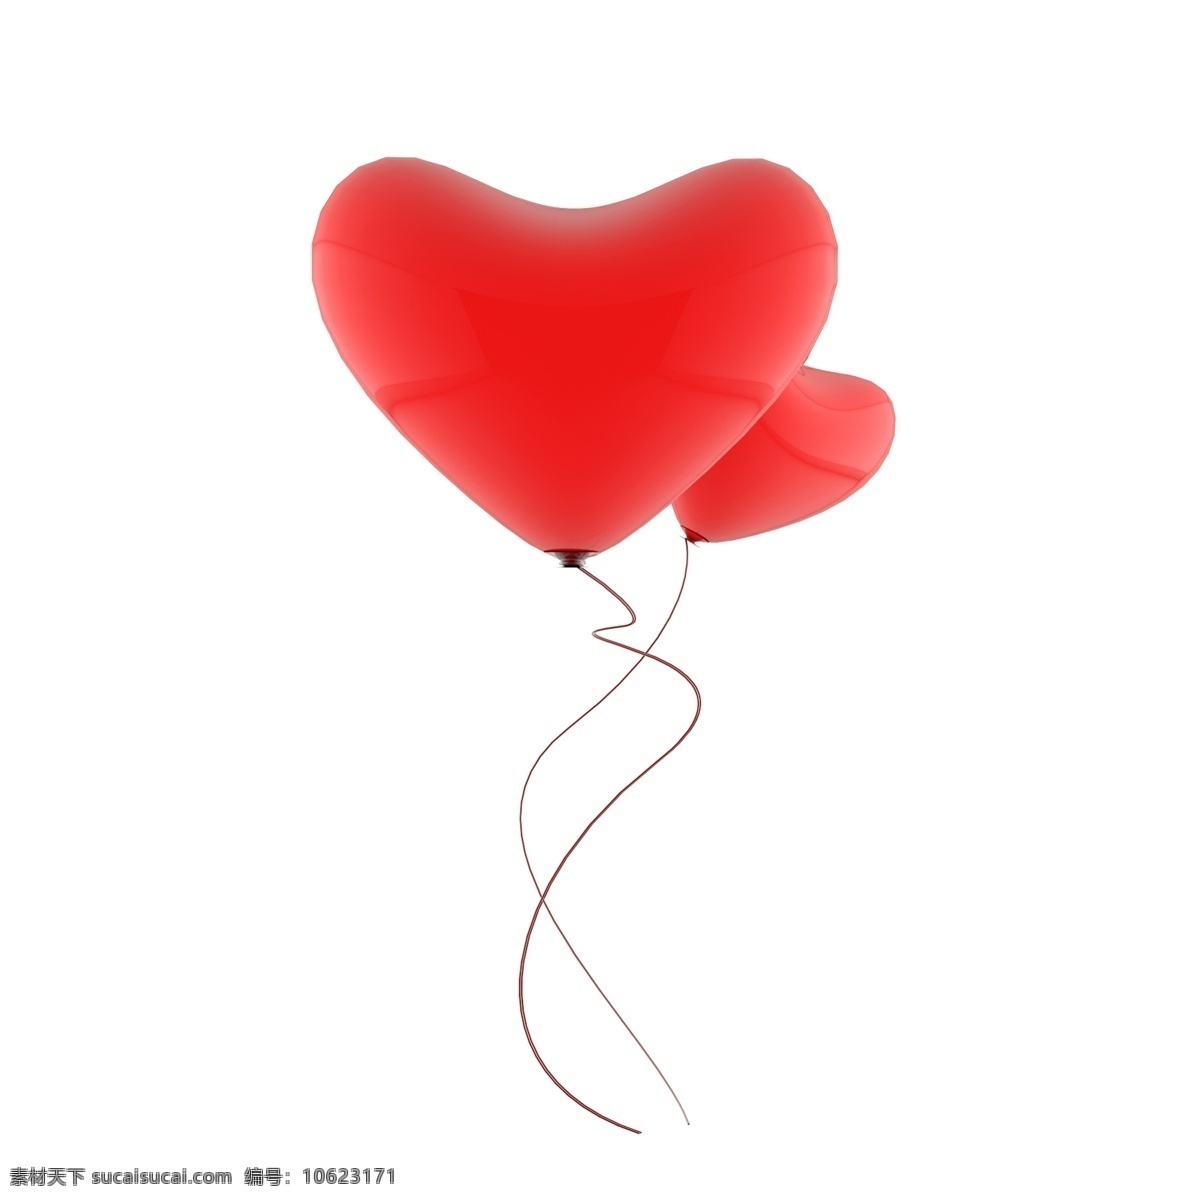 3d 质感 感恩节 氛围 装饰 红色 爱心 气球 红心 节日 氛围装饰 红色爱心 红色气球